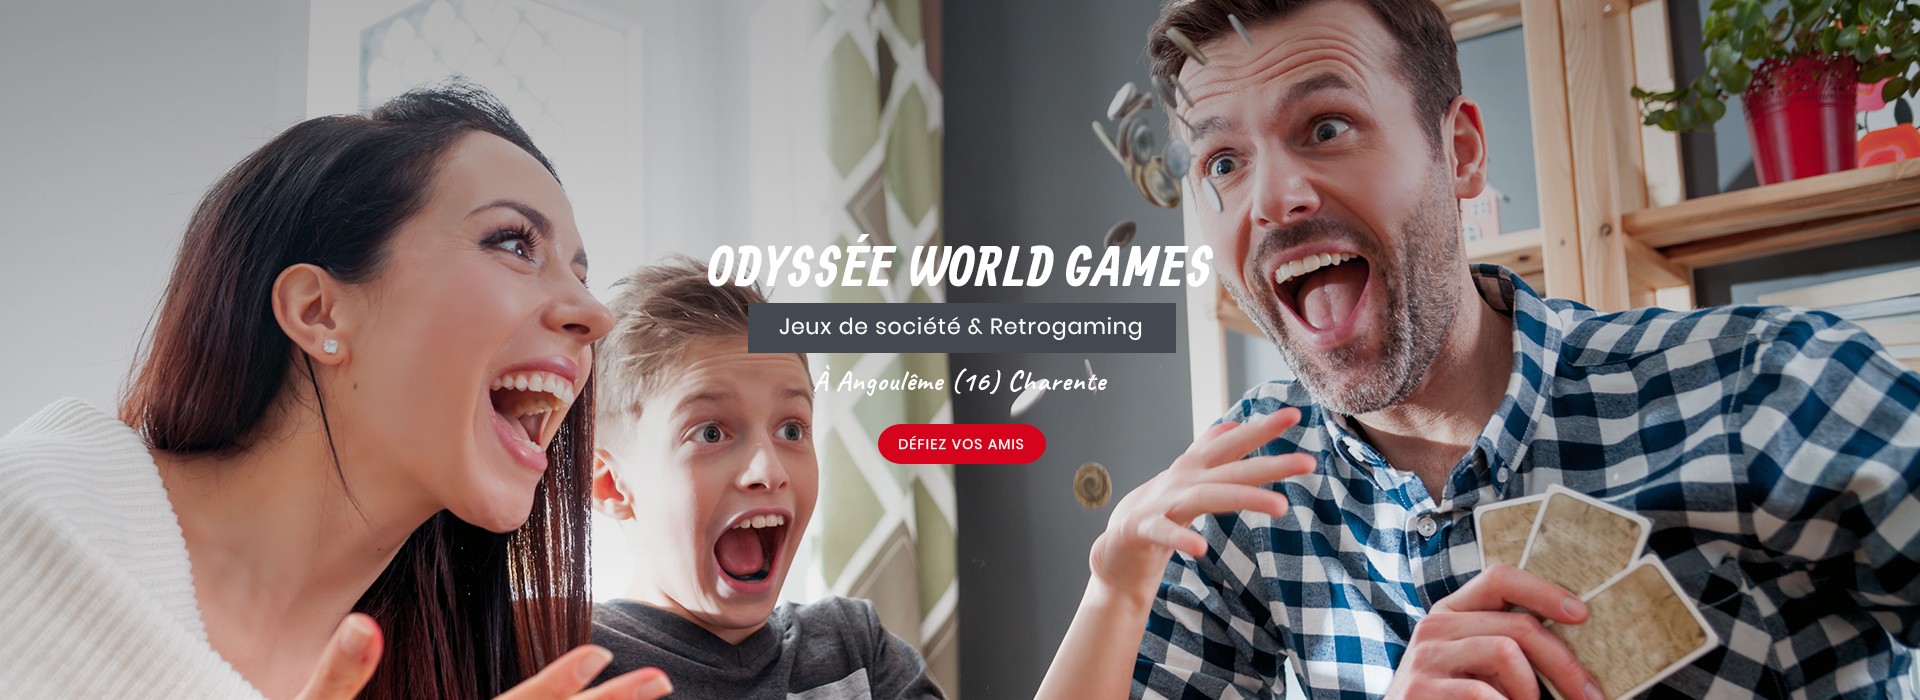 Odyssée World Games -  Jeux de société & retrogaming à Angoulême (16) Charente - Défiez vos amis